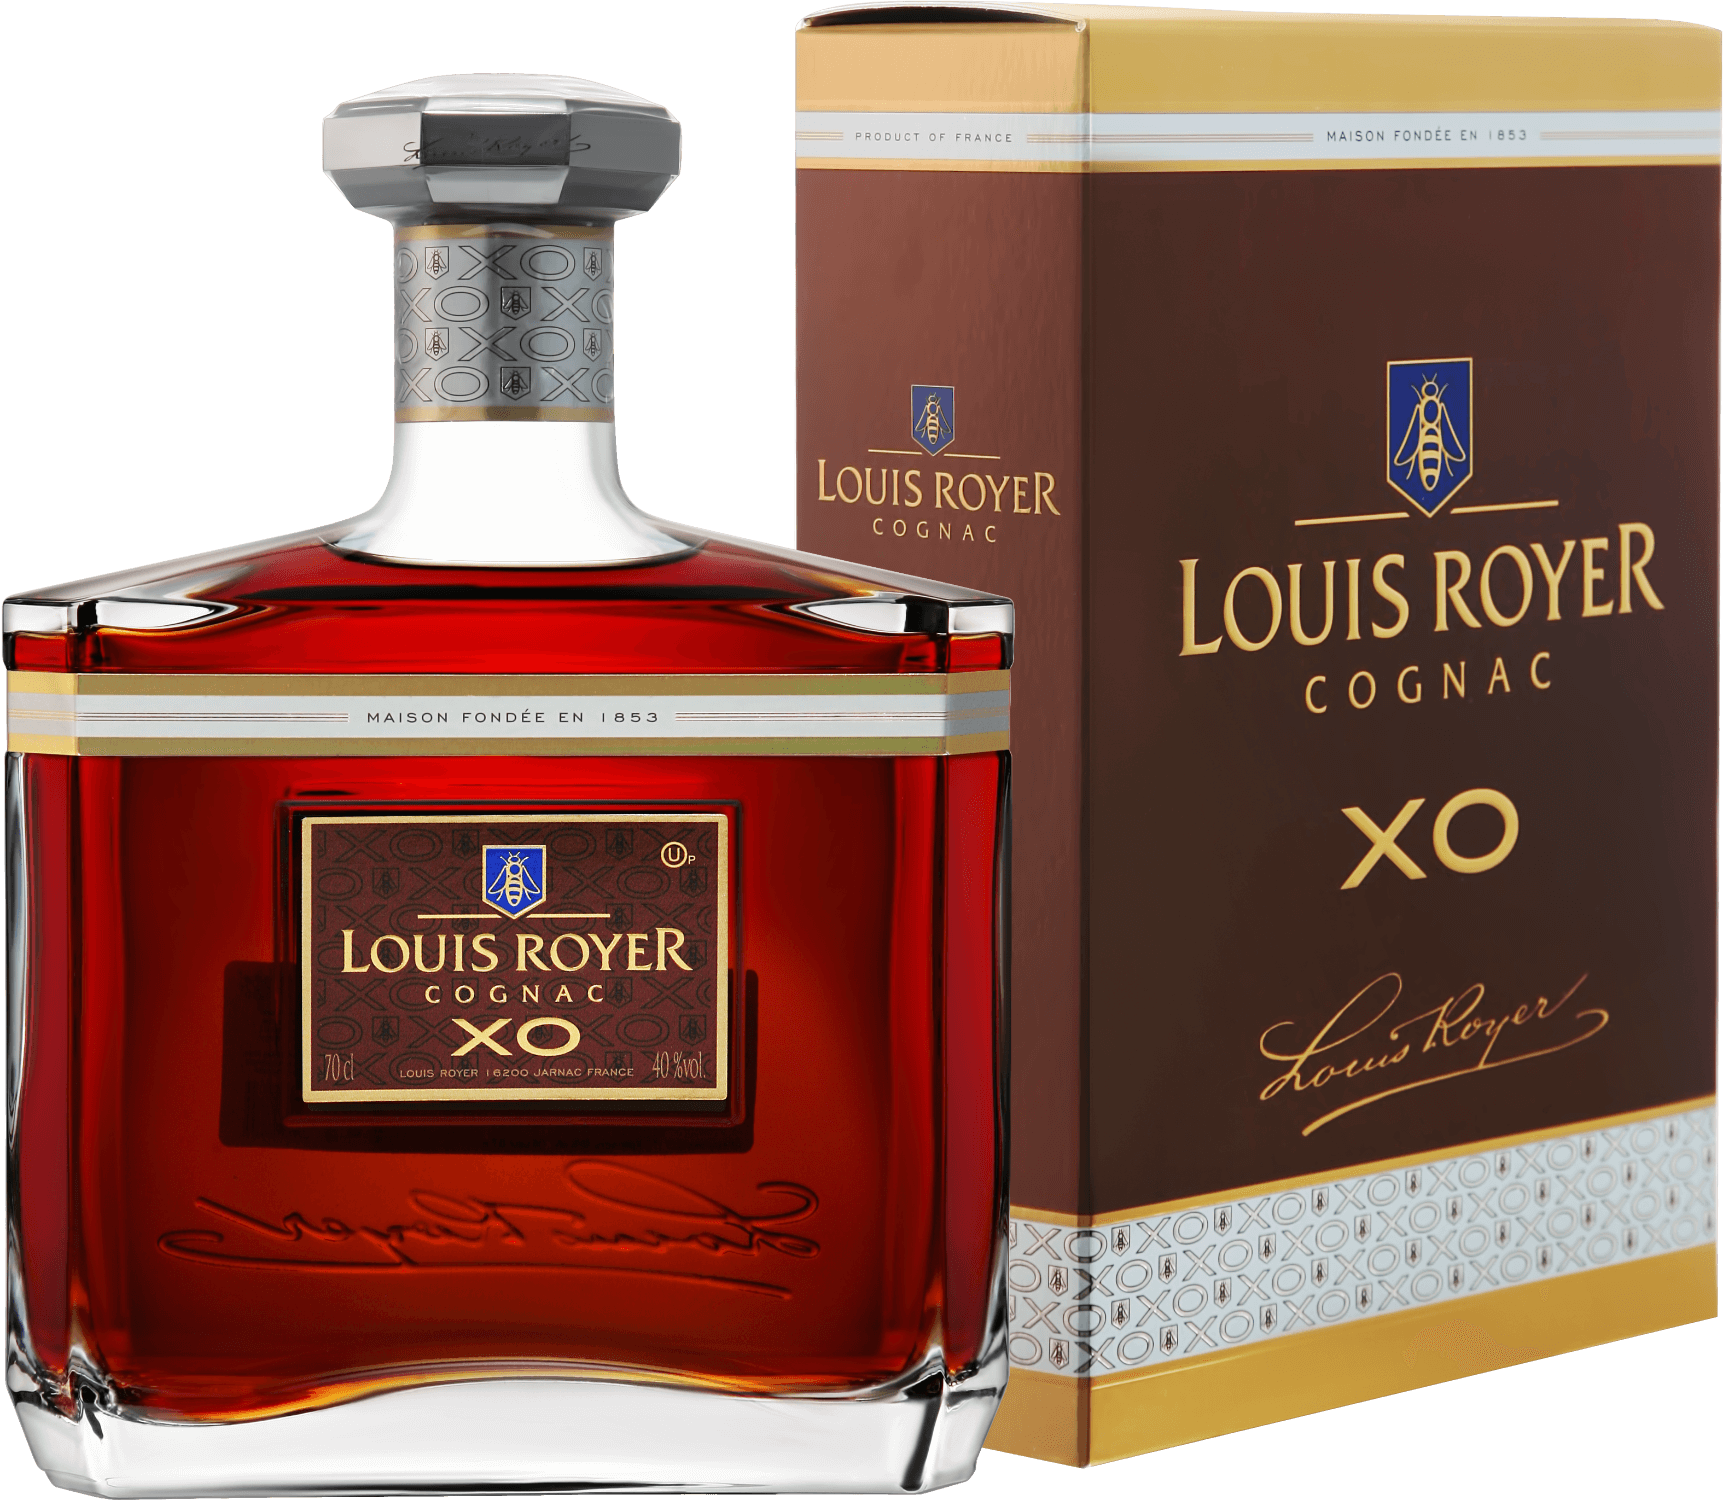 Louis Royer Cognac XO Kosher (gift box) louis royer cognac xo gift box